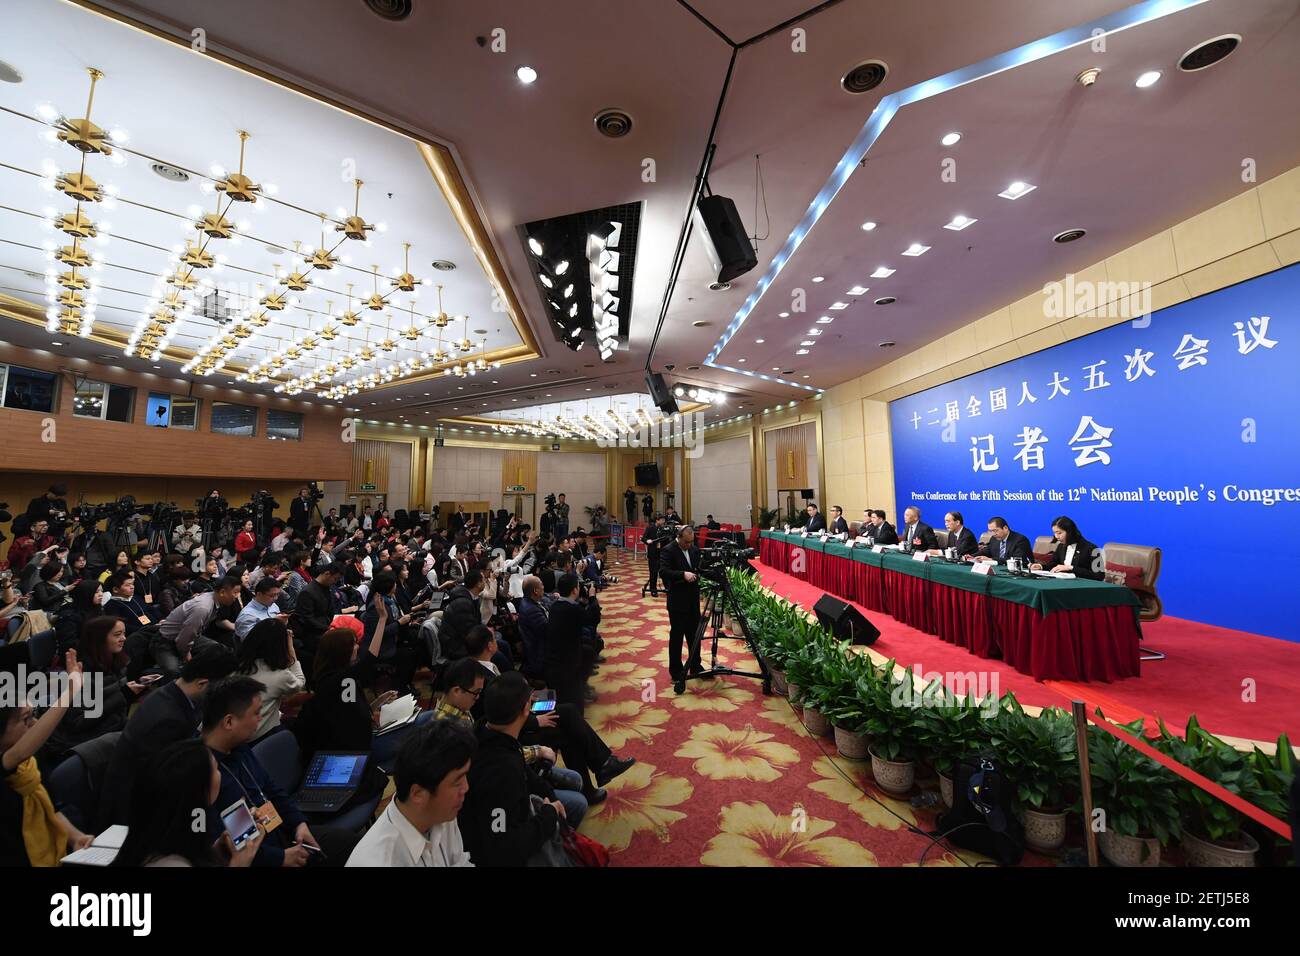 (170310) -- BEIJING, 10 de marzo de 2017 (Xinhua) -- Liu Binjie, presidente del Comité de Educación, Ciencia, Cultura y Salud Pública del Congreso Nacional del Pueblo (NPC), Wang Shengming, vicepresidente del Comité de Asuntos internos y judiciales del NPC, Yin Zhongqing, vicepresidente del Comité de Asuntos Económicos y financieros del NPC, Yuan Si, vicepresidente del Comité de Protección del Medio Ambiente y Conservación de Recursos del NPC, Liu Xiuwen, director adjunto de la Comisión de Asuntos presupuestarios del Comité Permanente del NPC y Fu Wenjie, inspector de la Oficina de Secretarios del Foto de stock